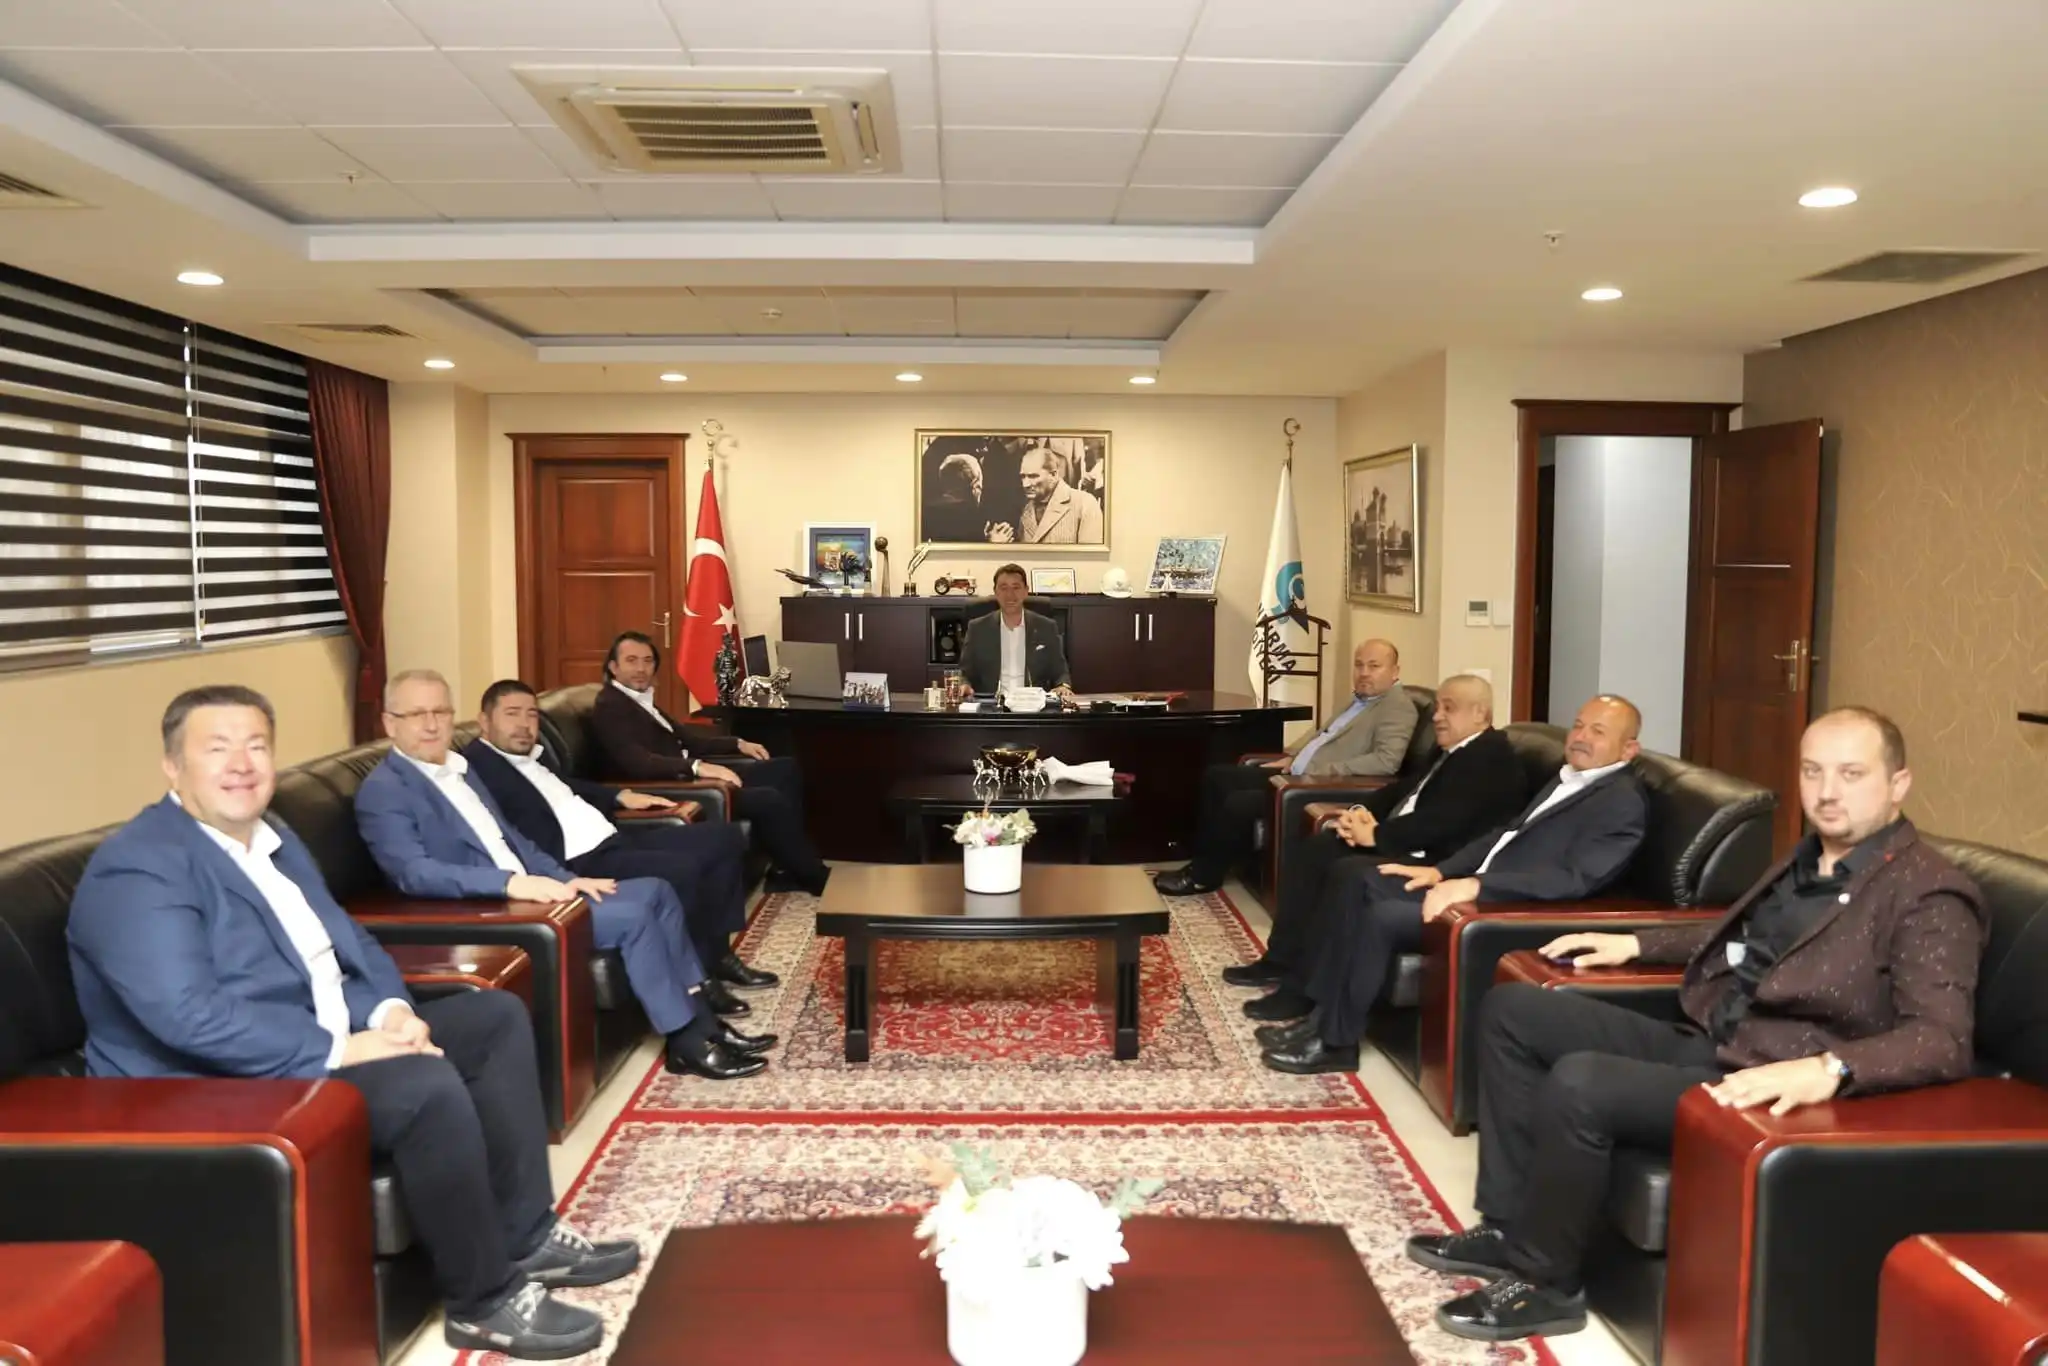 Bandırmaspor, geçtiğimiz günlerde gerçekleştirdiği seçimli genel kurulun ardından yeni yönetimiyle göreve başlayan Başkan Onur Göçmez ve yönetim kurulu ekibi, Belediye Başkanı Av. Tolga Tosun'u ziyaret etti.